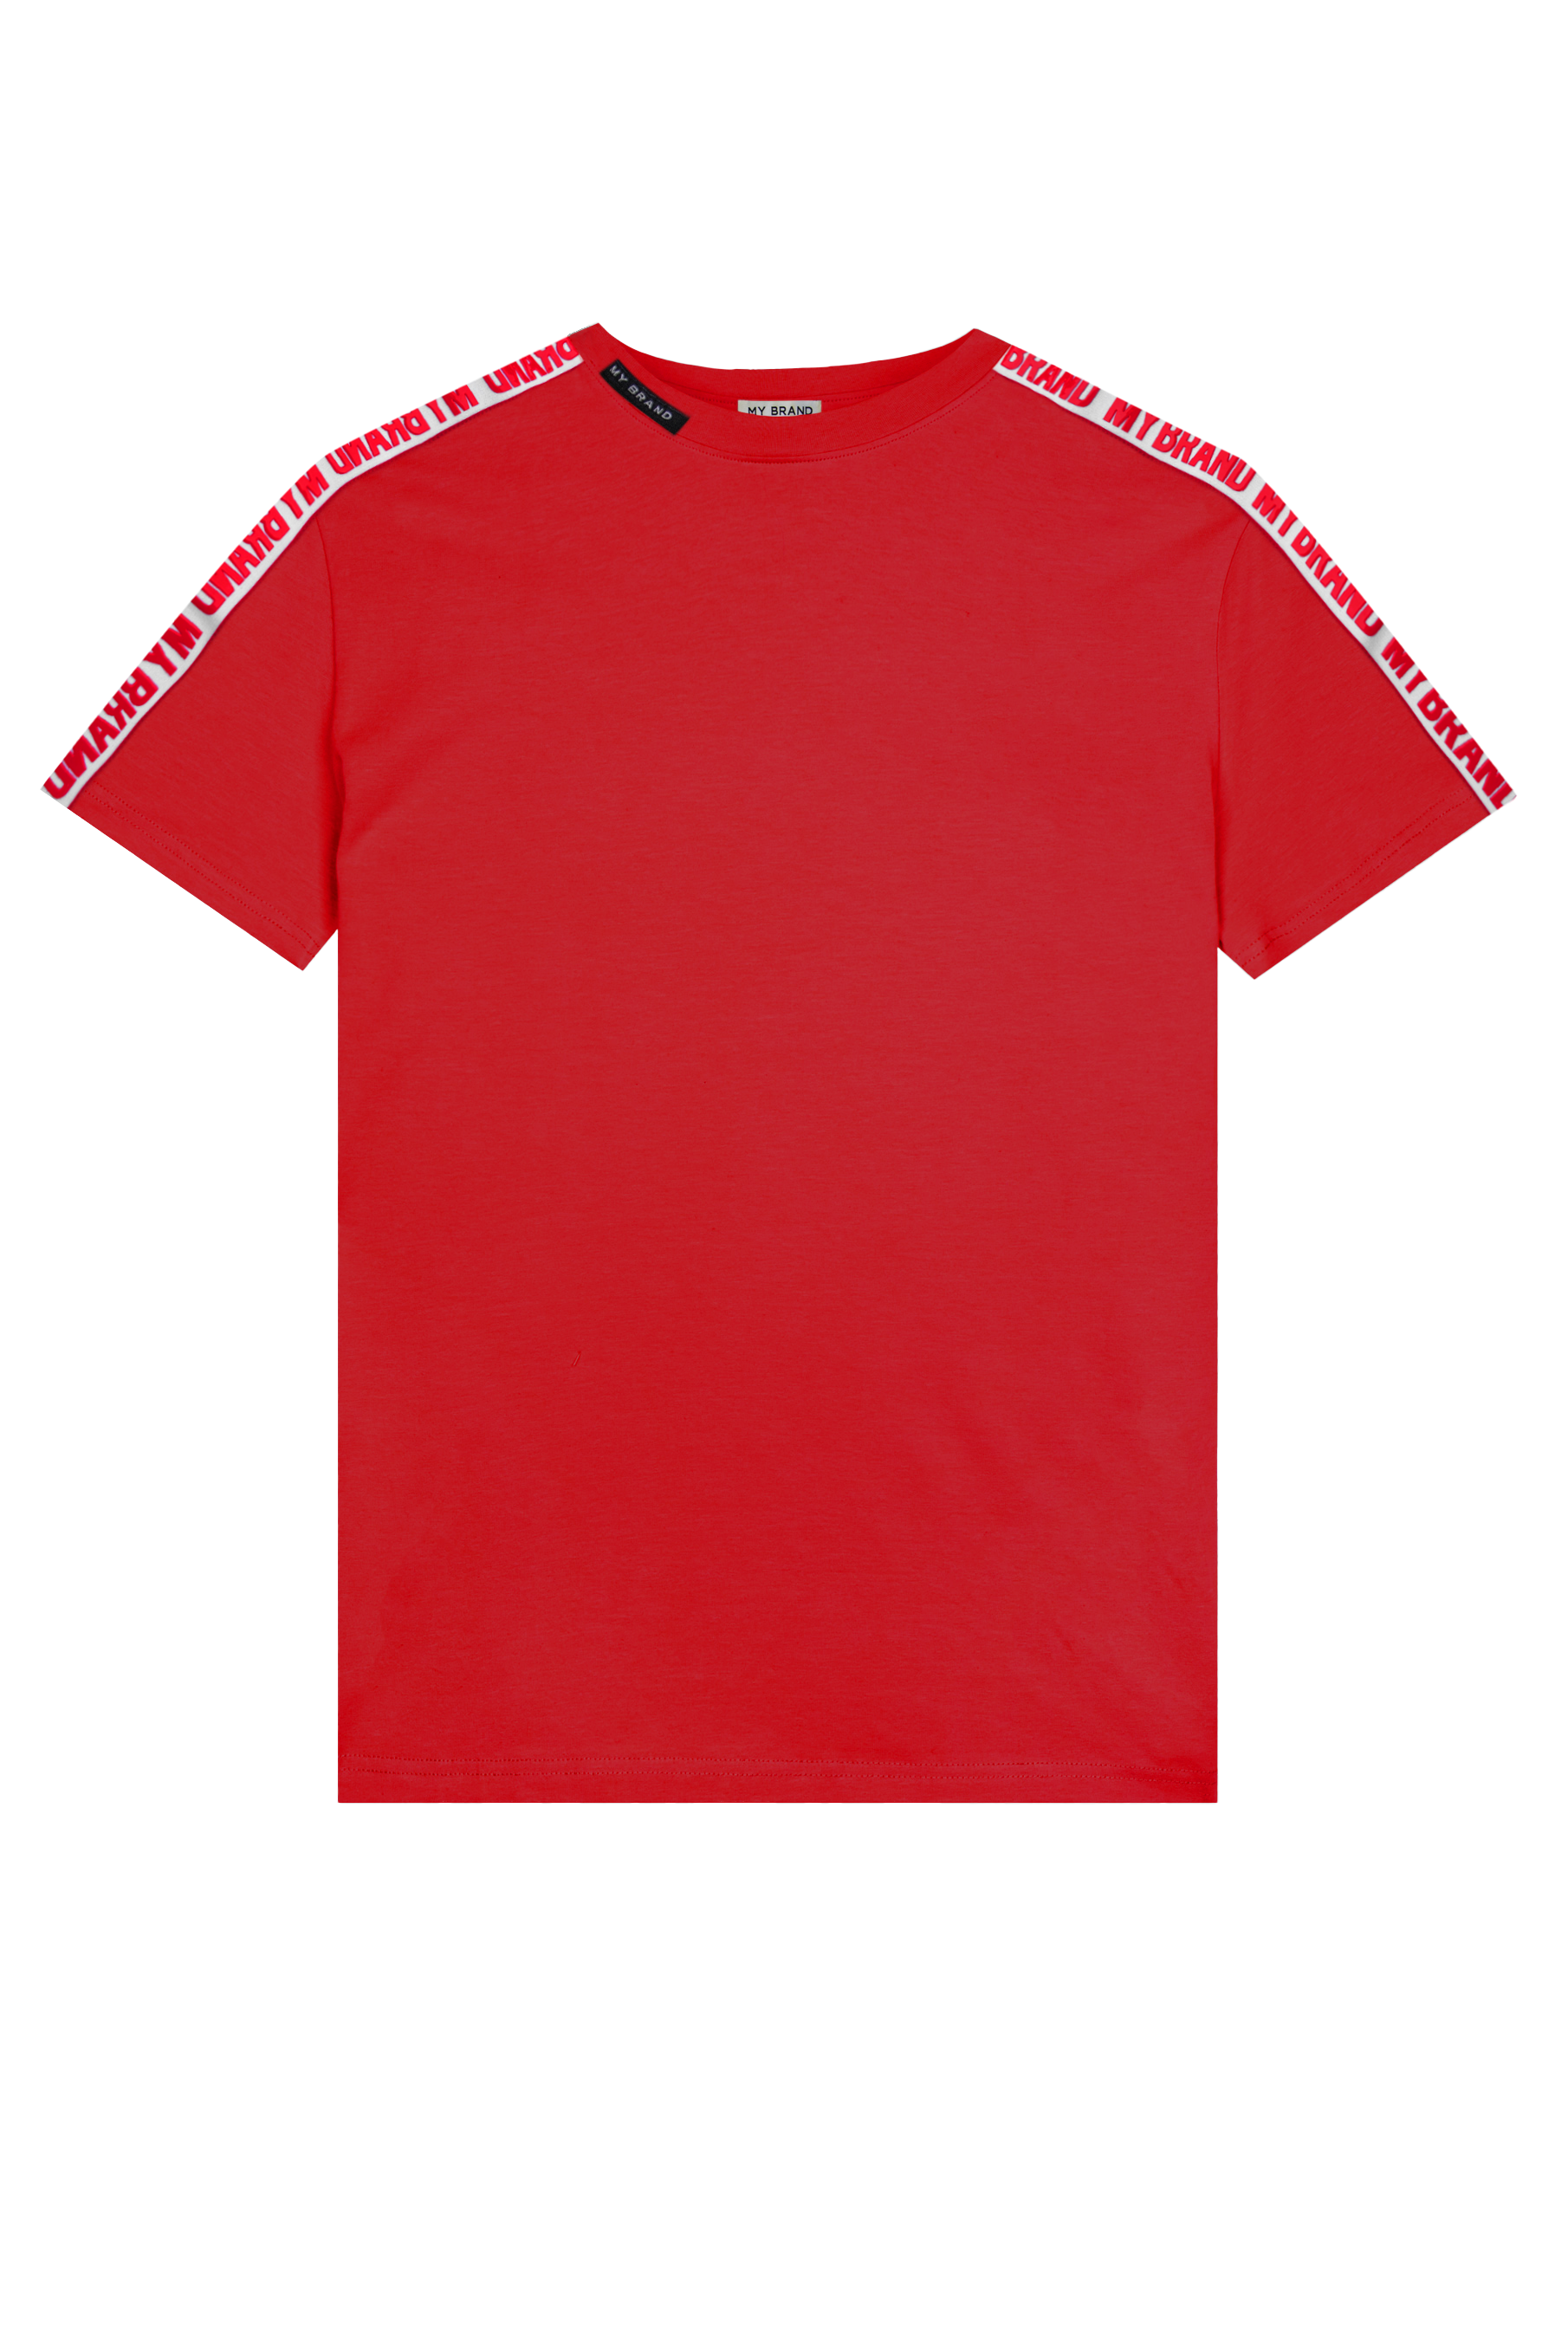 MB Logo Taping Shirt Red